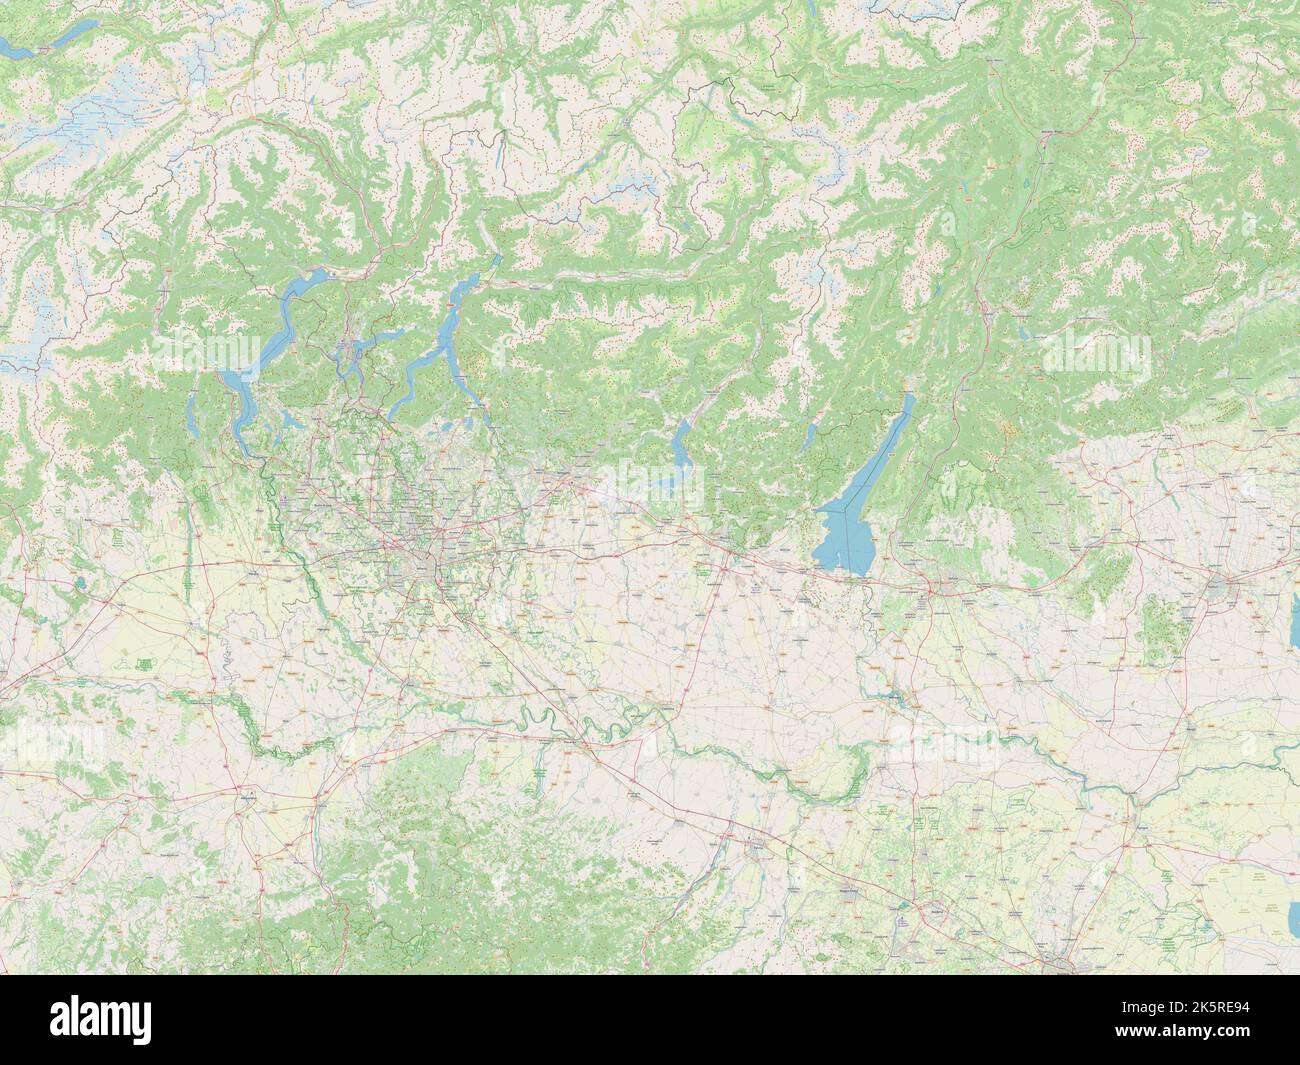 Lombardia, region of Italy. Open Street Map Stock Photo